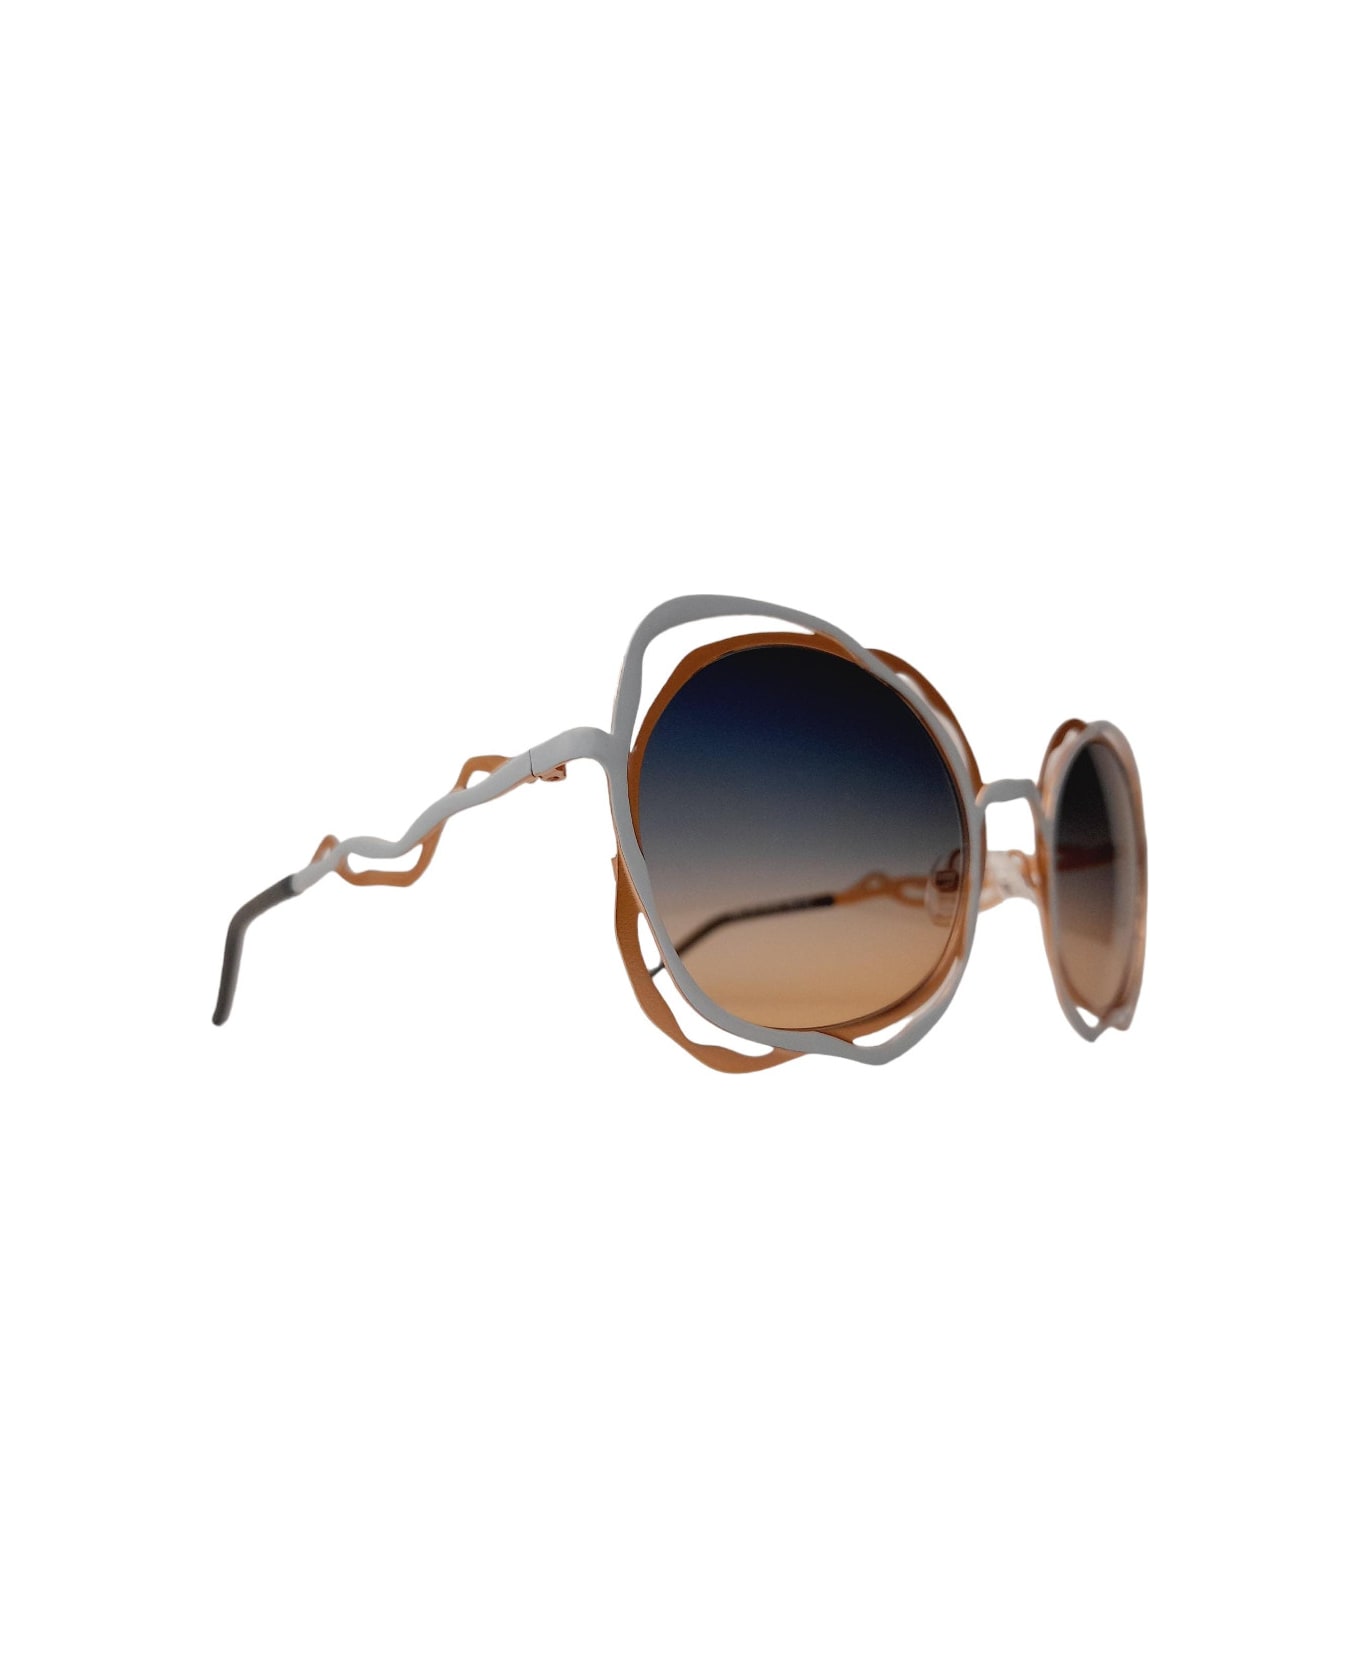 Liò Occhiali ISM1187 - C03 Sunglasses - Oro bronzato e avorio azzurrato